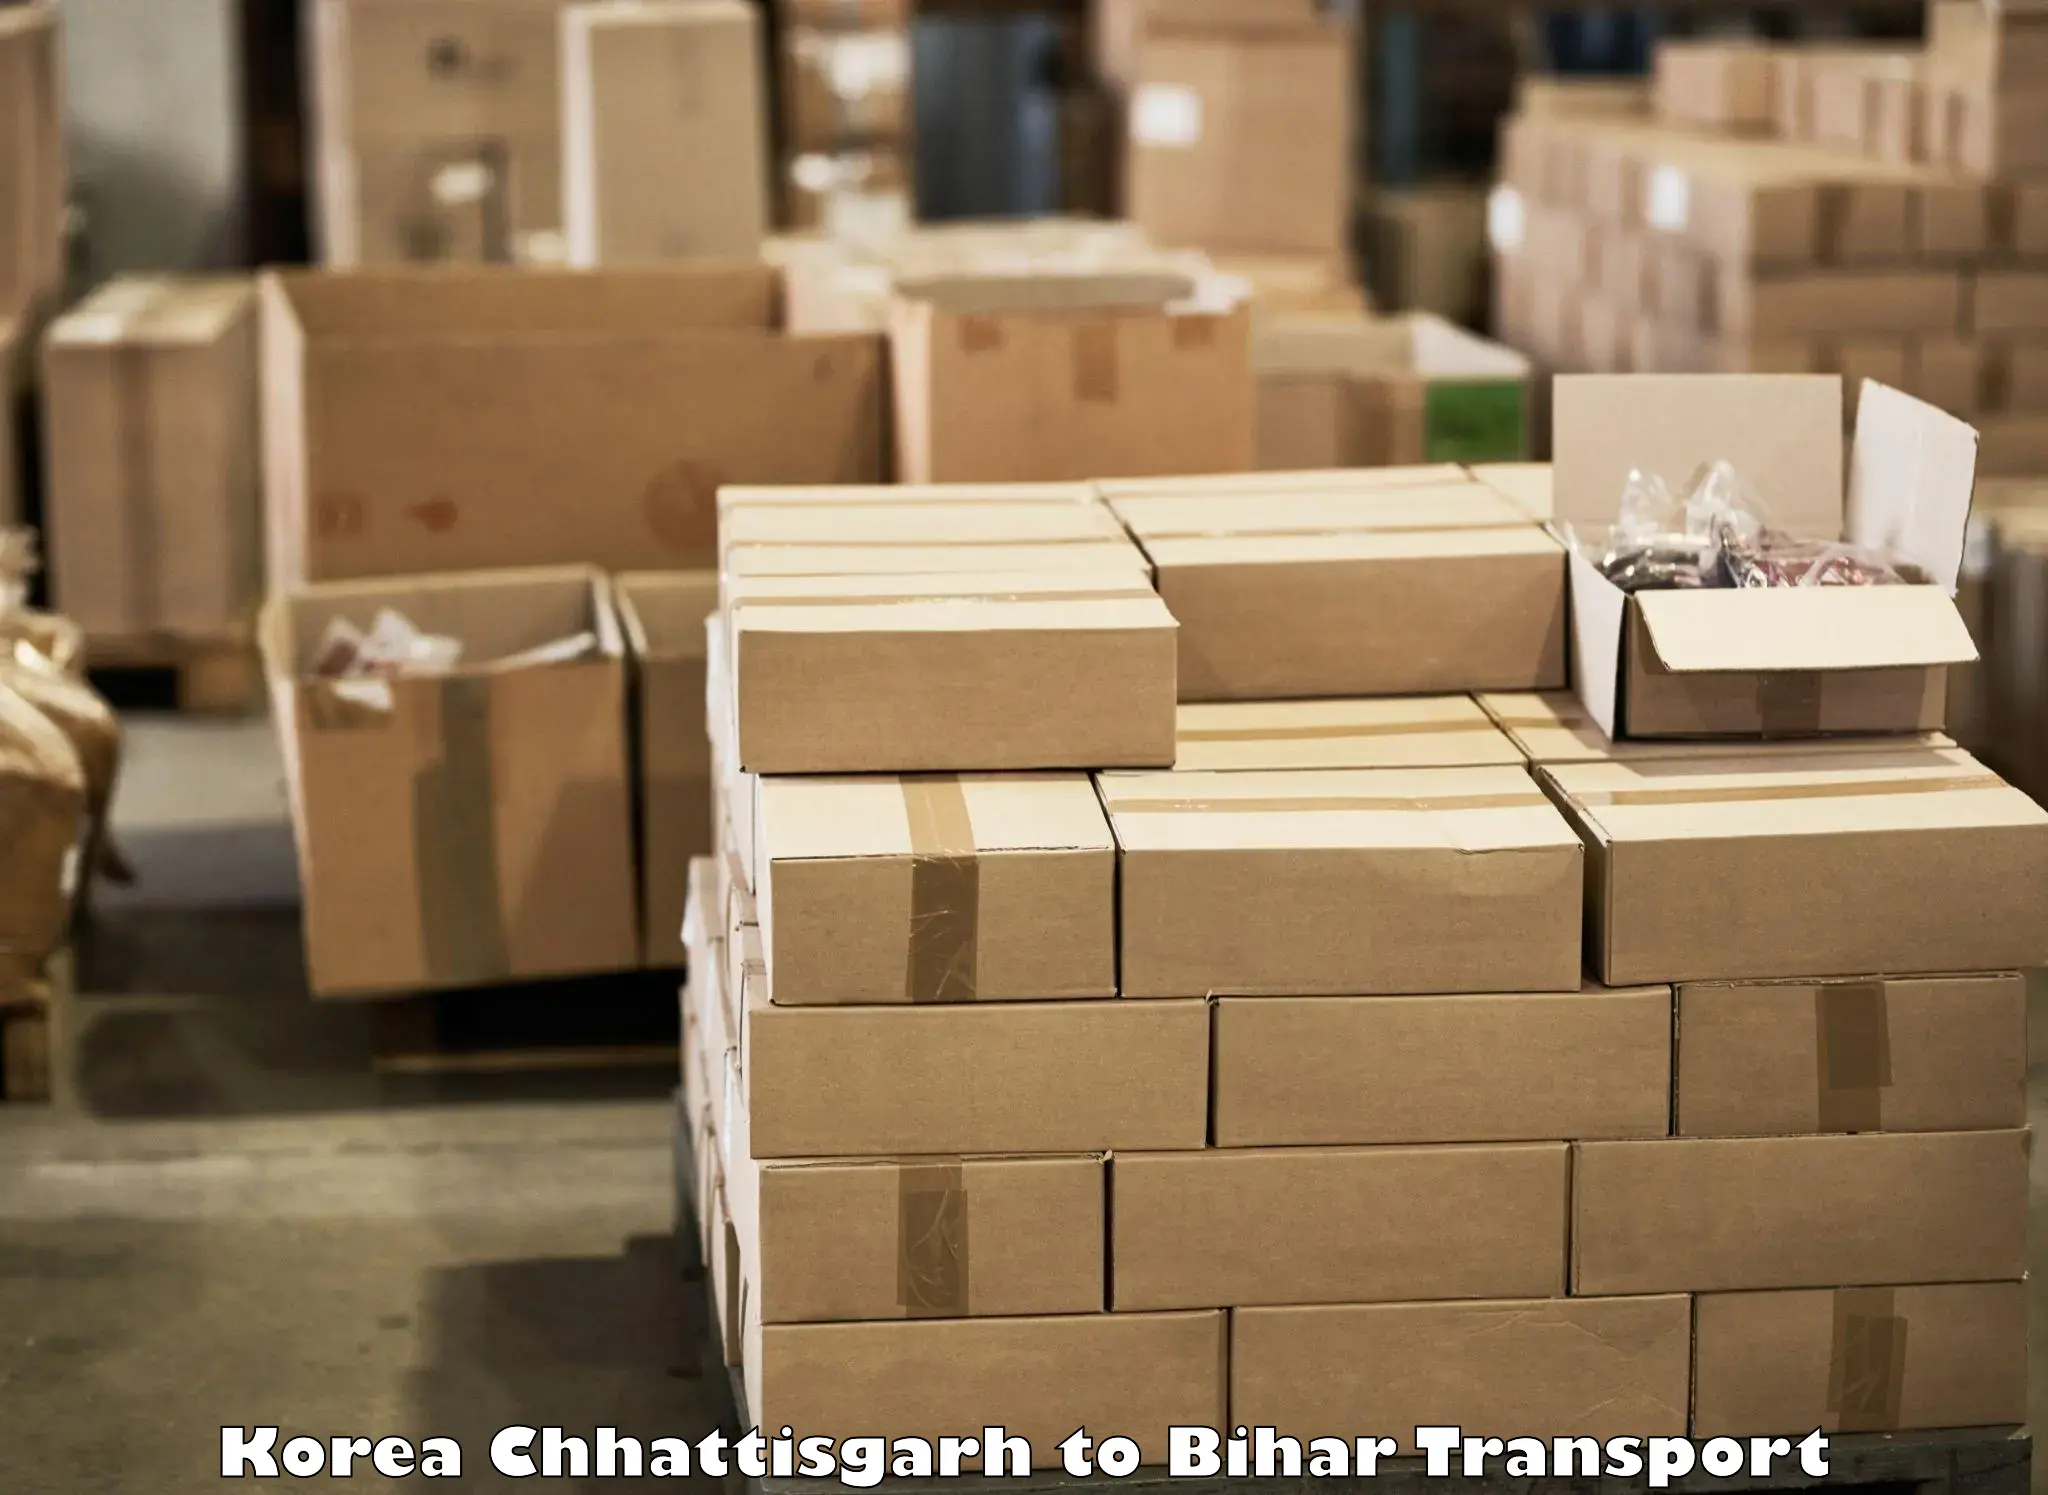 Delivery service Korea Chhattisgarh to Bihar